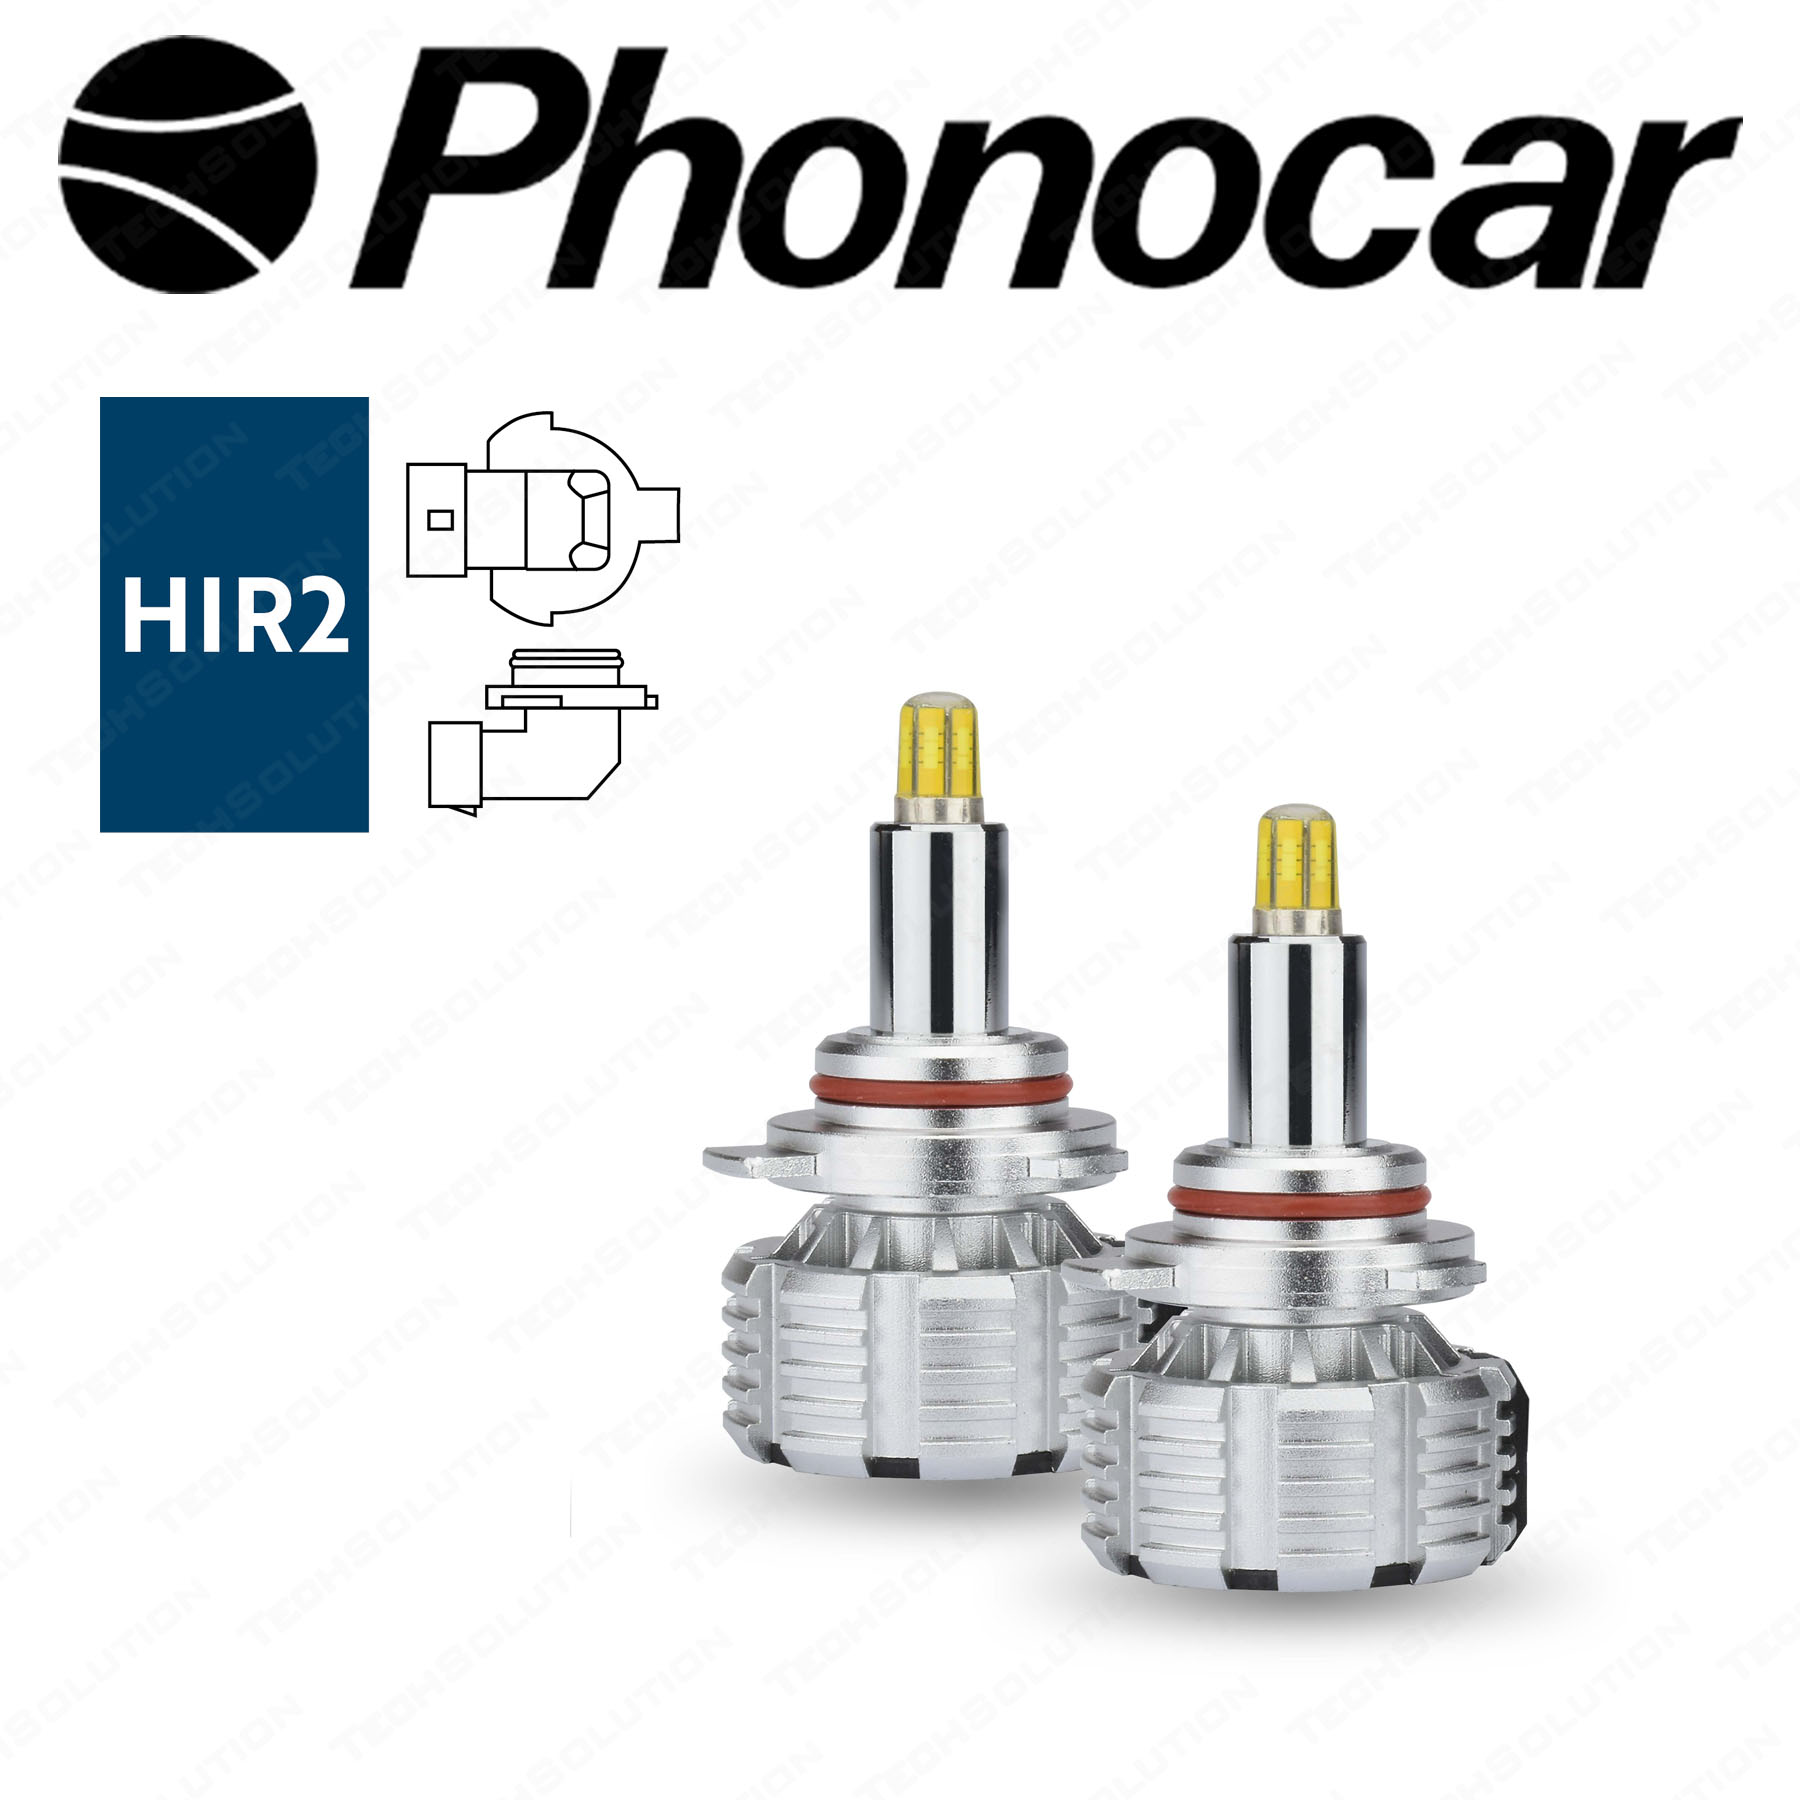 Phonocar 07546 Lampada Led HIR2 per fari Lenticolari - Tech Solution